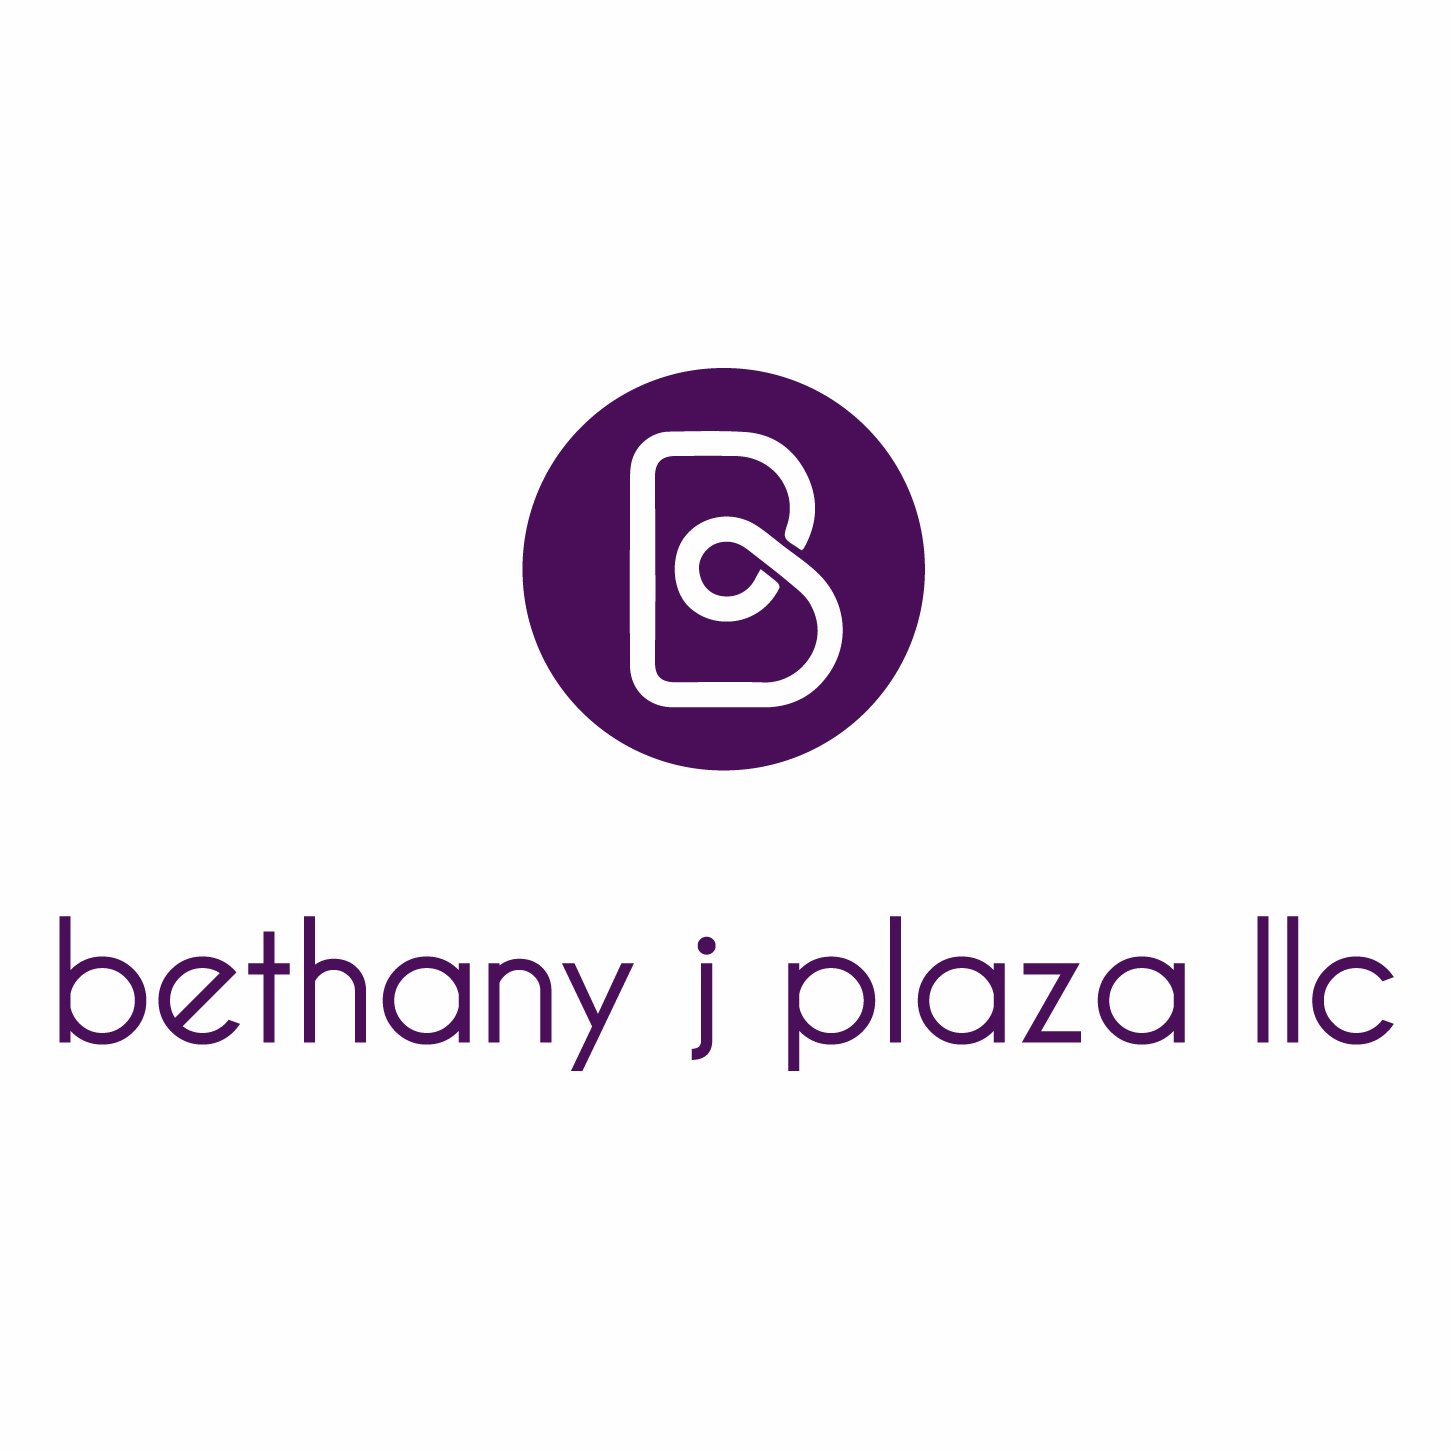 Bethany J Plaza